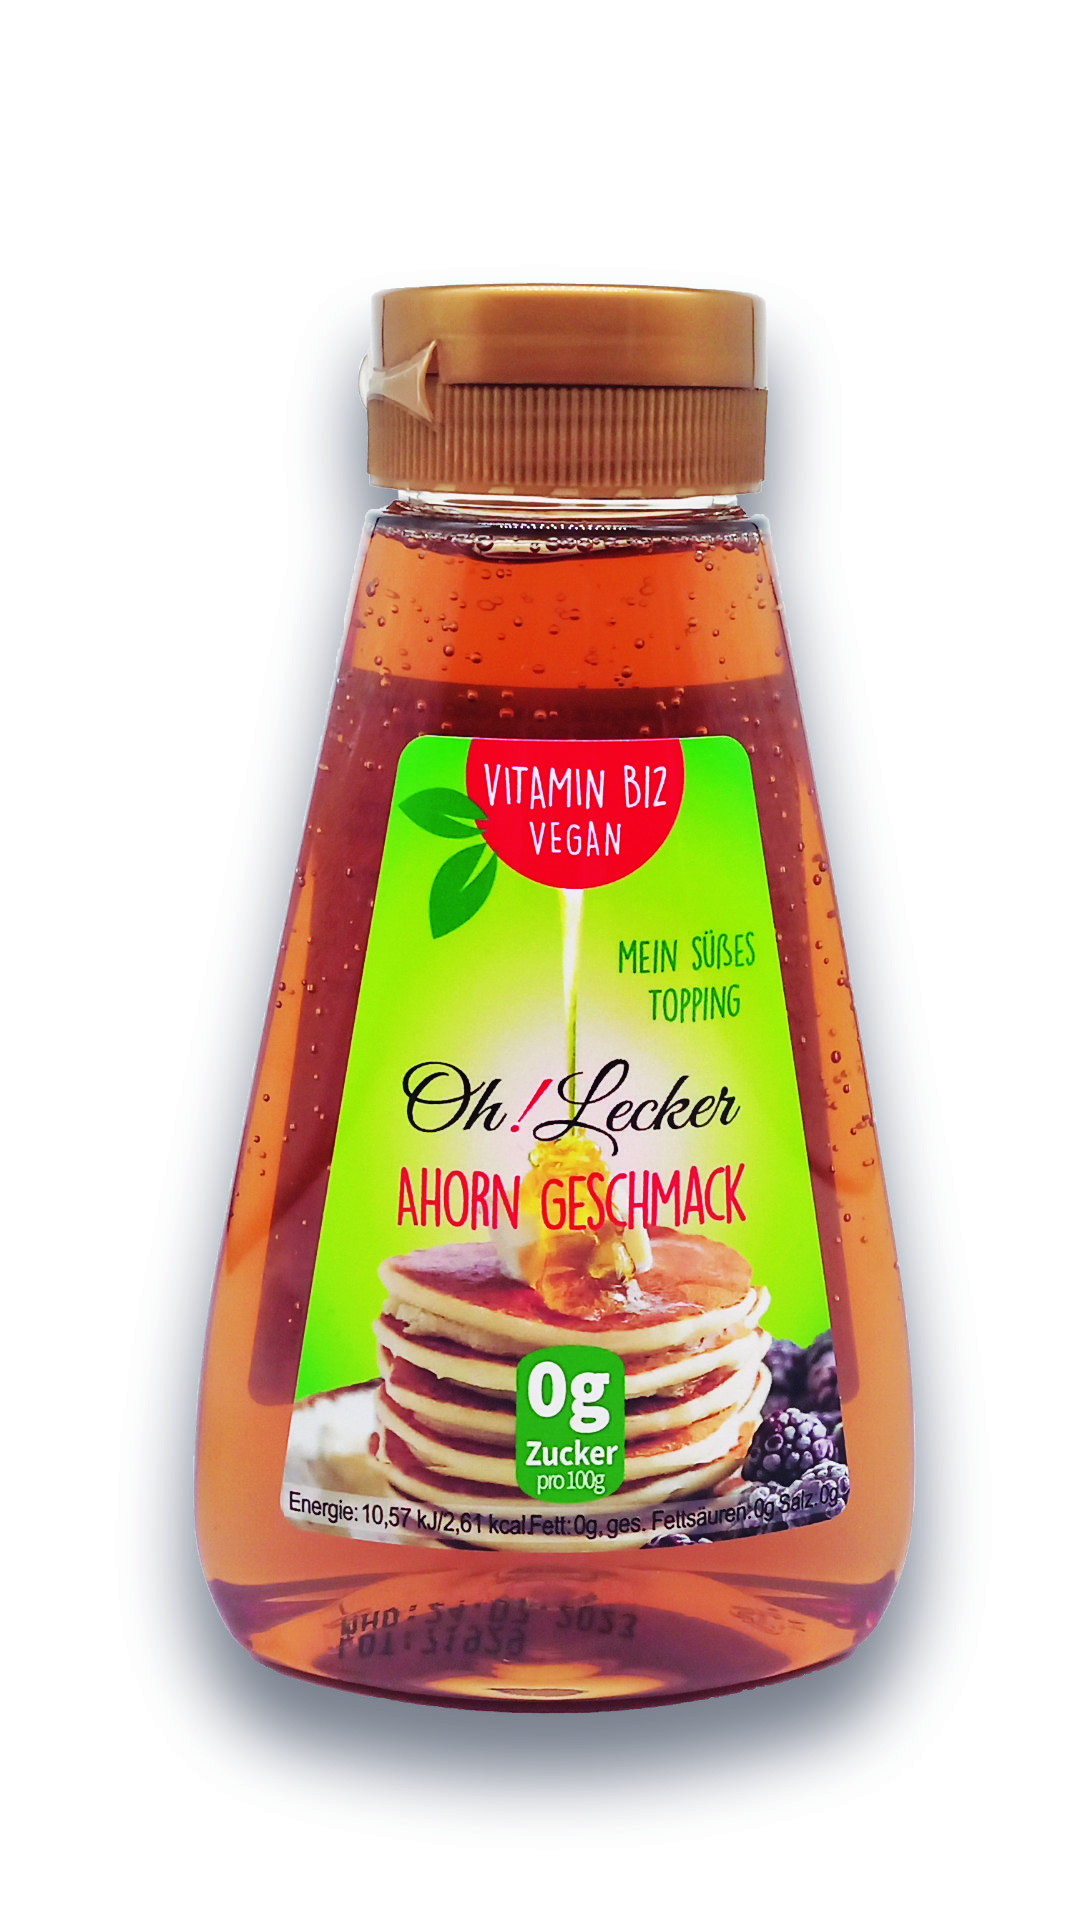 4 x Oh! Lecker Stevia* Sirup mit Ahorn-Geschmack, Vitamin B12, 265g